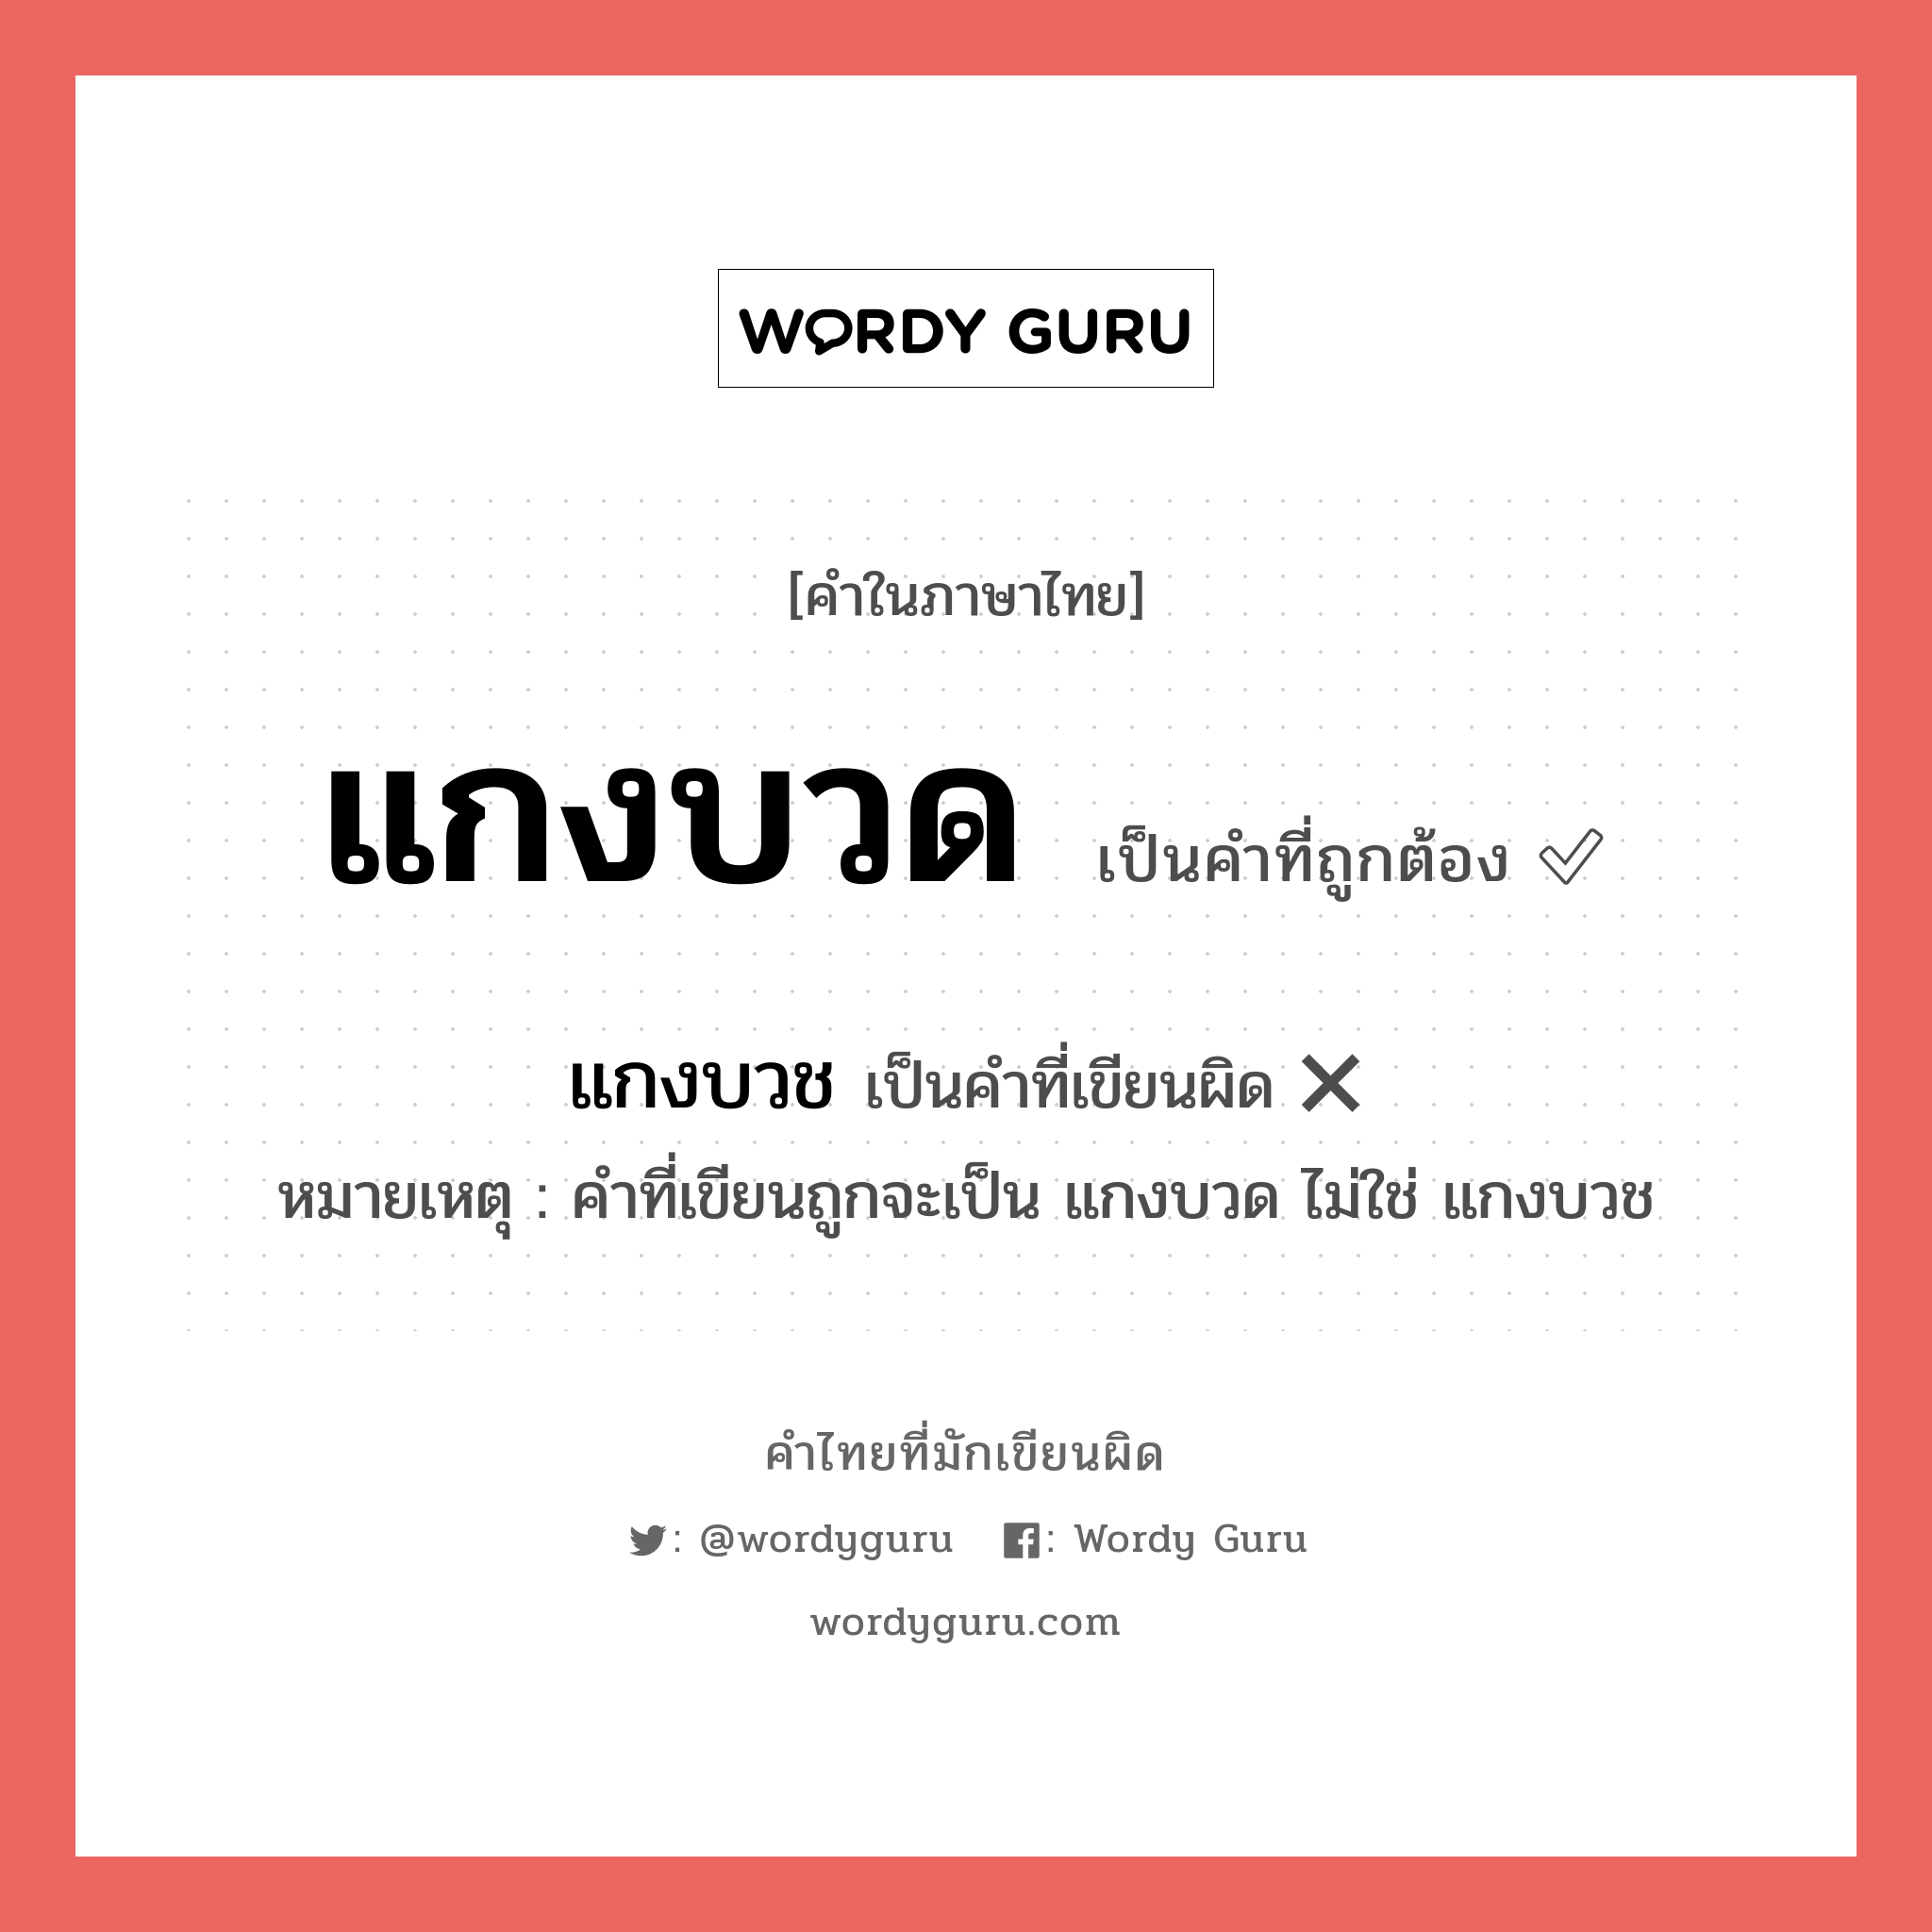 แกงบวช หรือ แกงบวด คำไหนเขียนถูก?, คำในภาษาไทยที่มักเขียนผิด แกงบวช คำที่ผิด ❌ แกงบวด หมายเหตุ คำที่เขียนถูกจะเป็น แกงบวด ไม่ใช่ แกงบวช